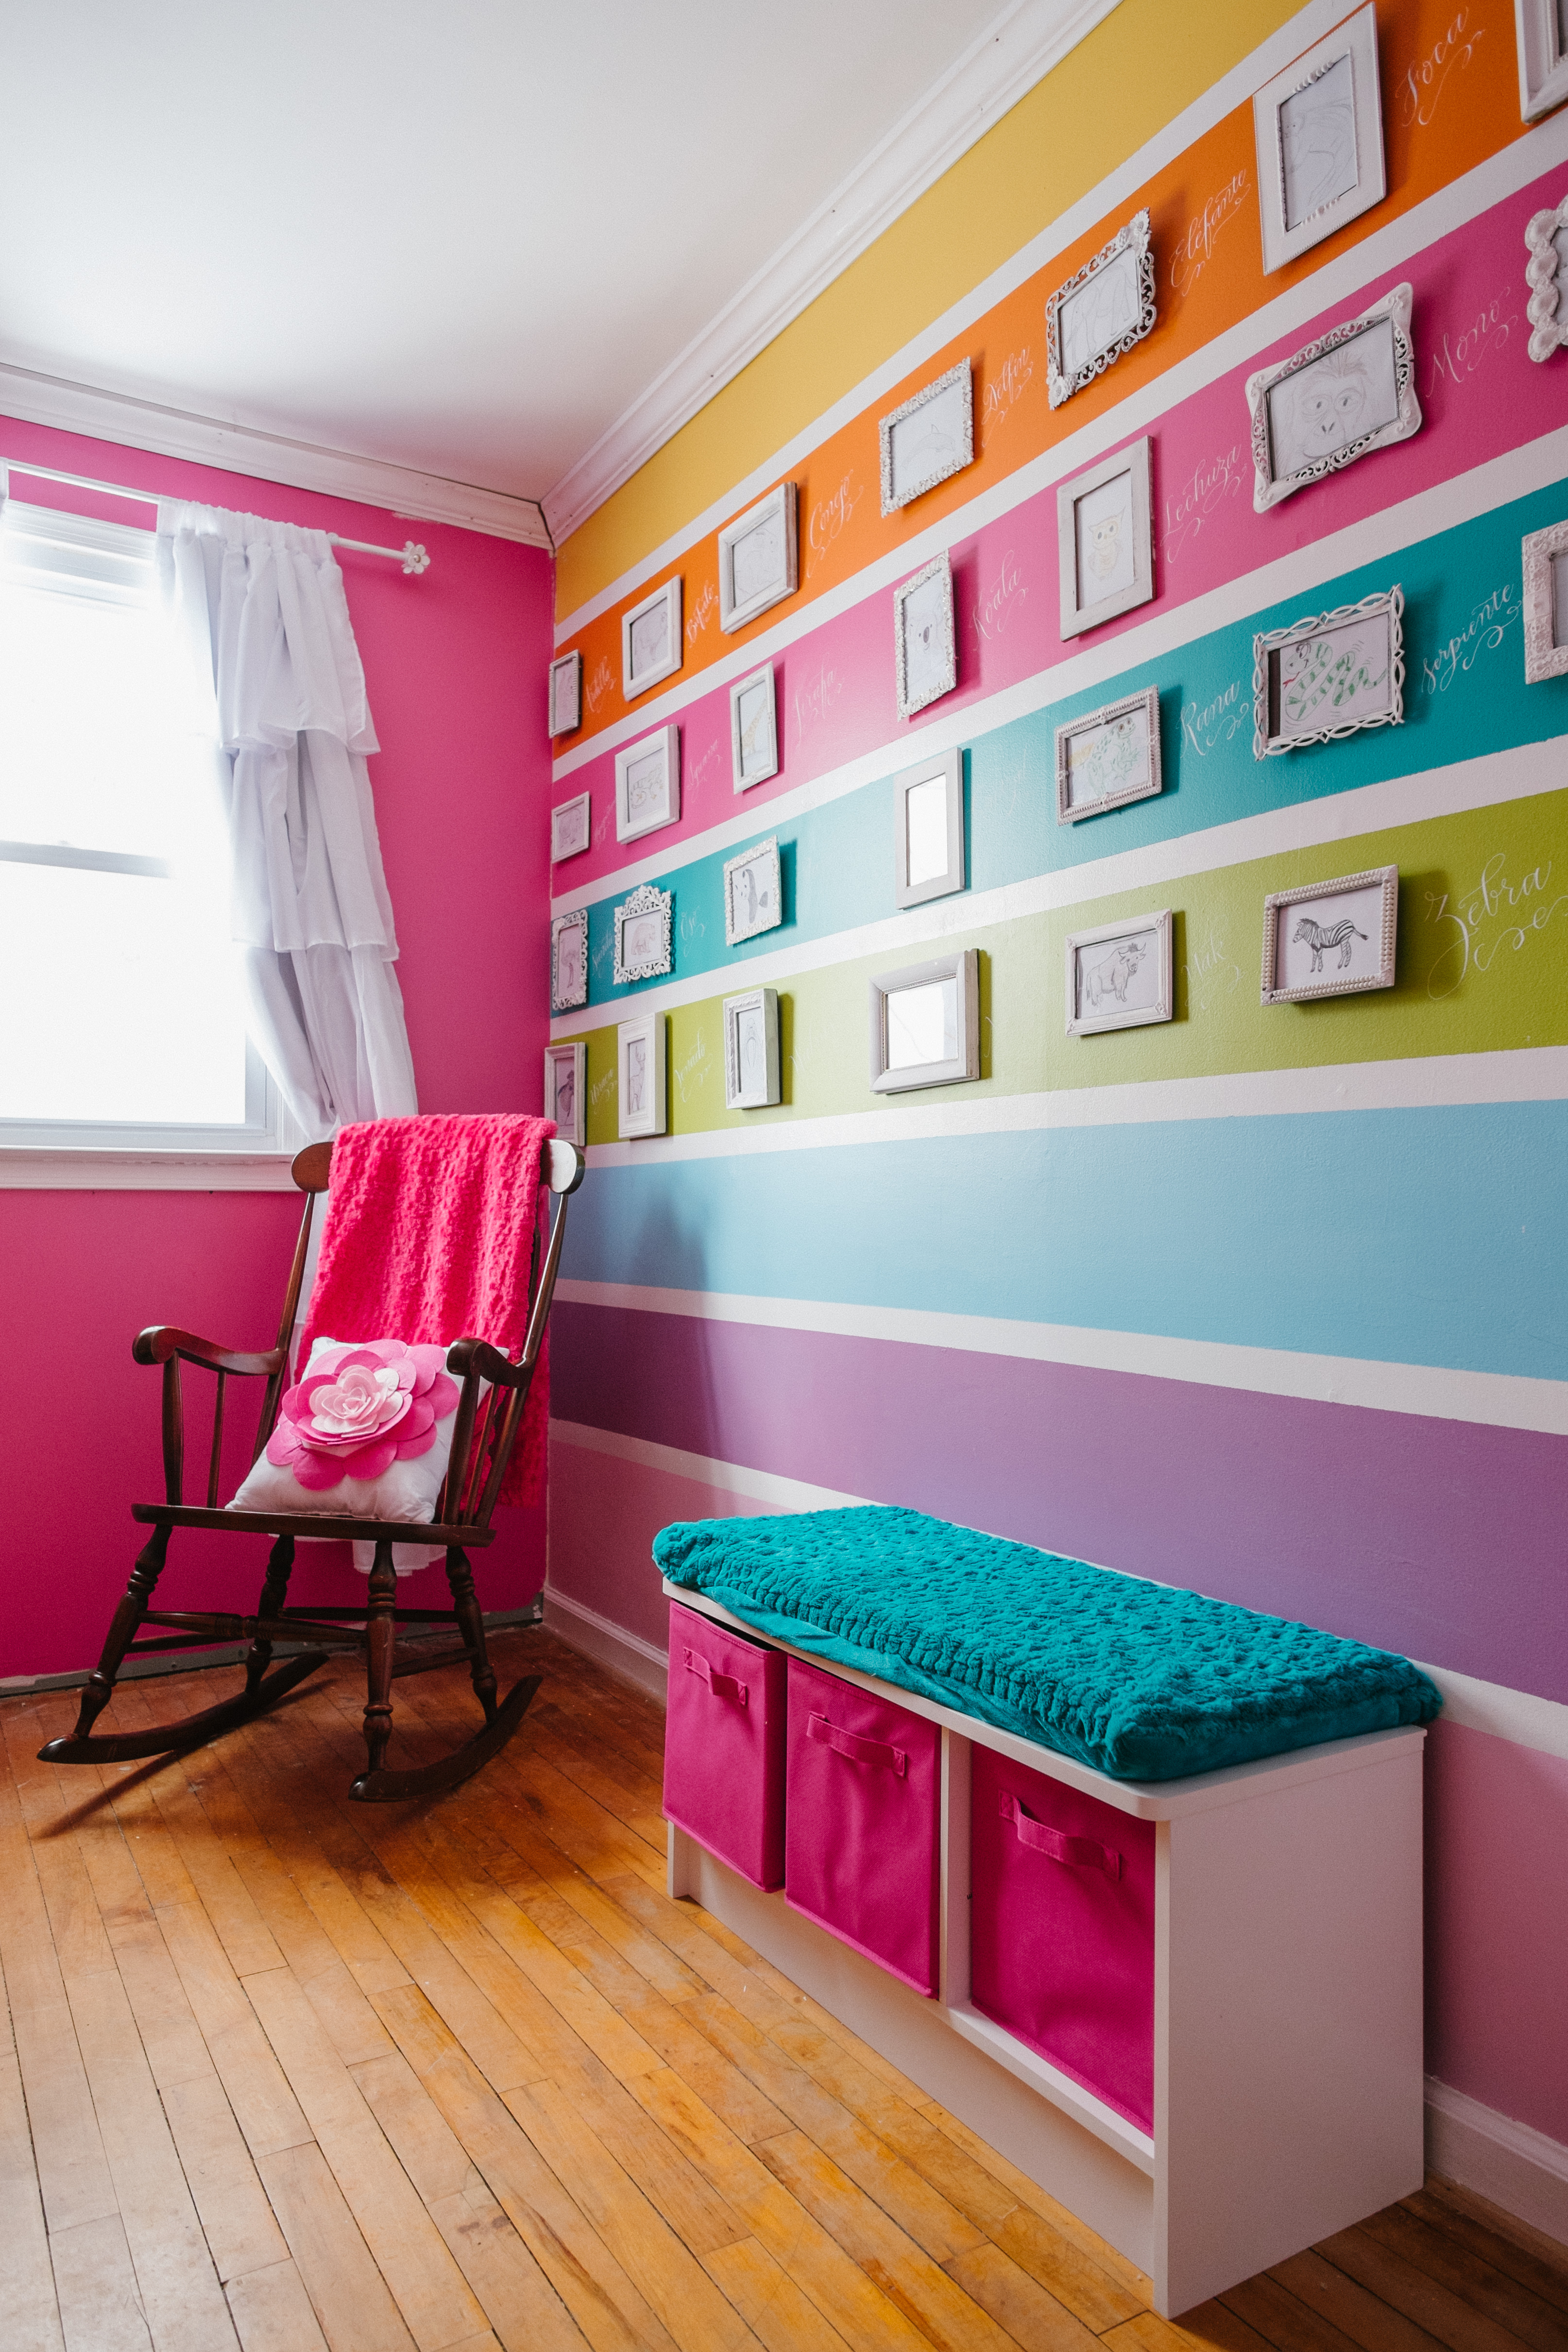 Красиво покрасить комнату. Покрашенные стены в интерьере. Разноцветные стены в комнате. Яркие краски в интерьере. Яркие цвета в интерьере.